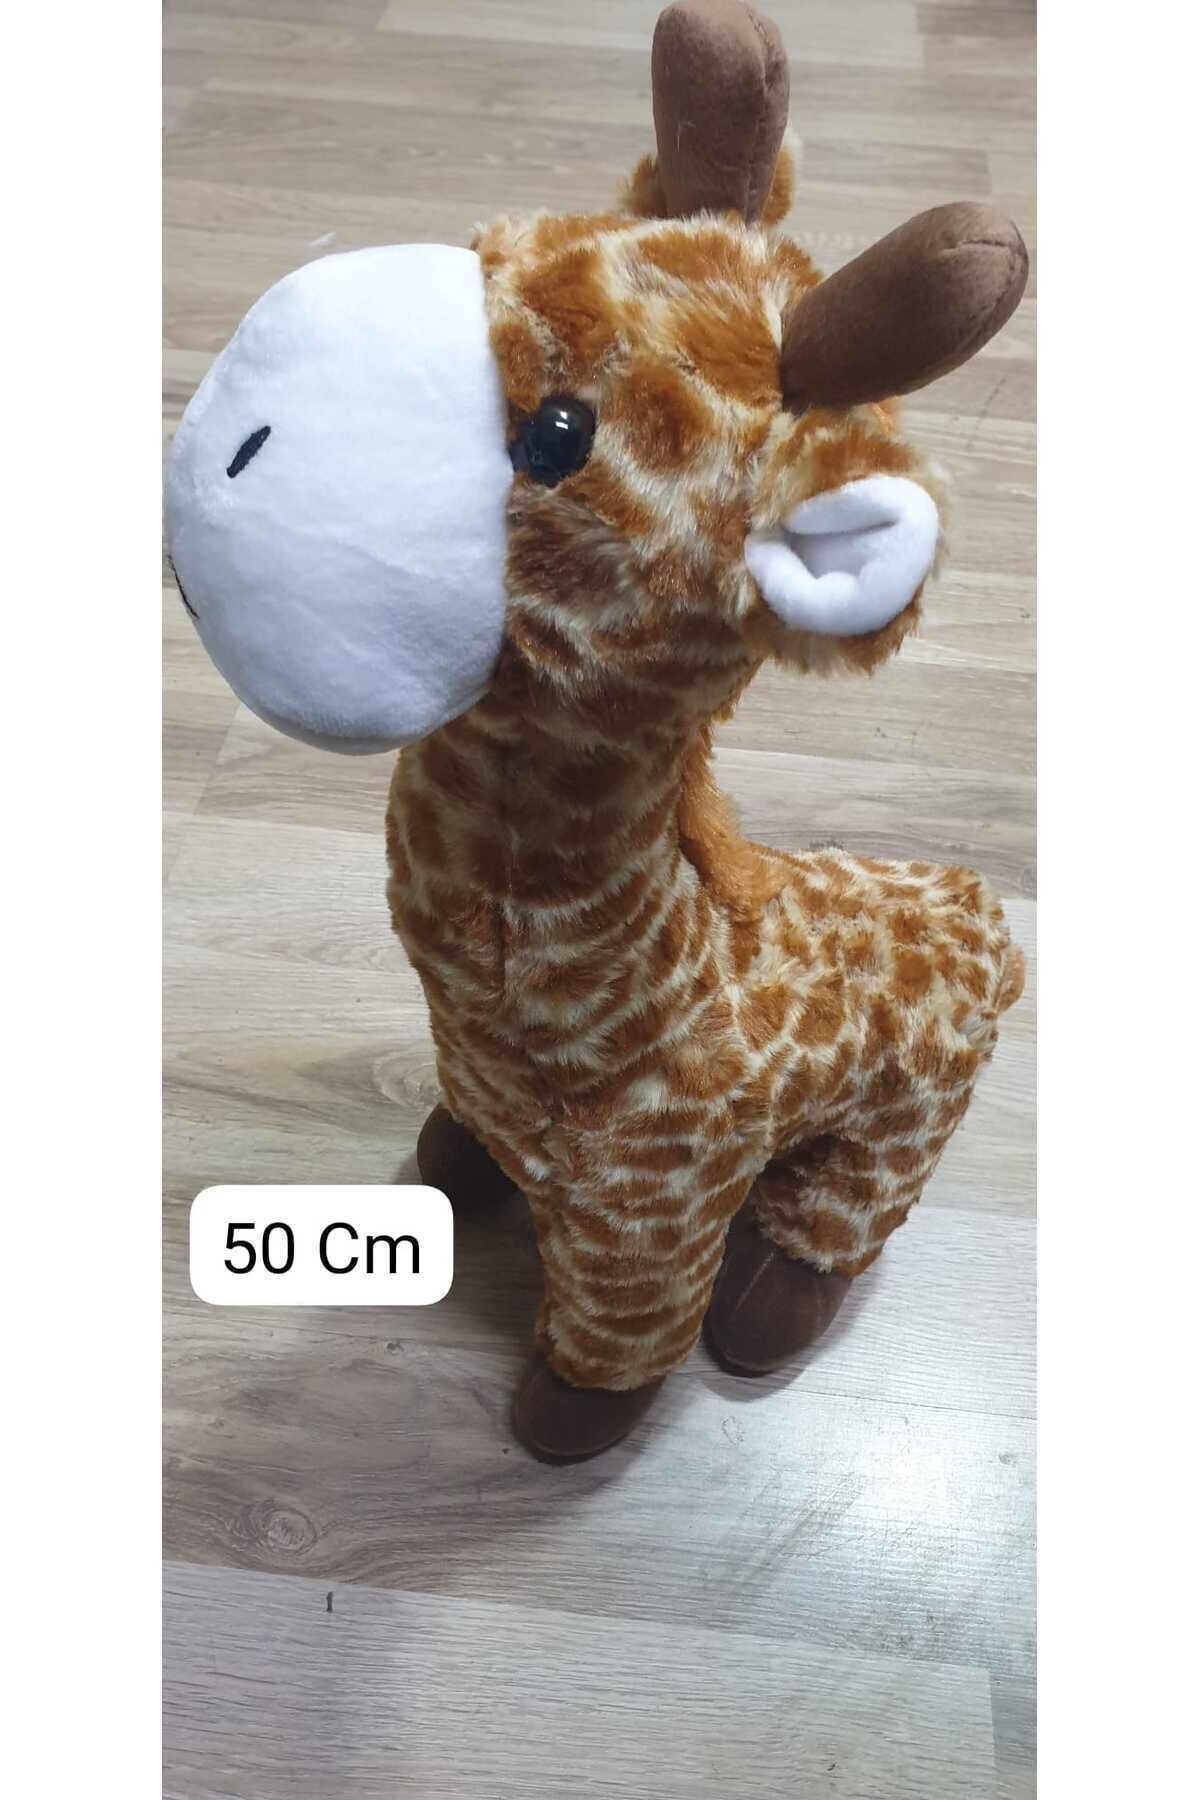 Hepsilazım Peluş Zürafa Oyuncak Pelüş 50 Cm Büyük Boy Orijinal Giraffe Toys Zurafa